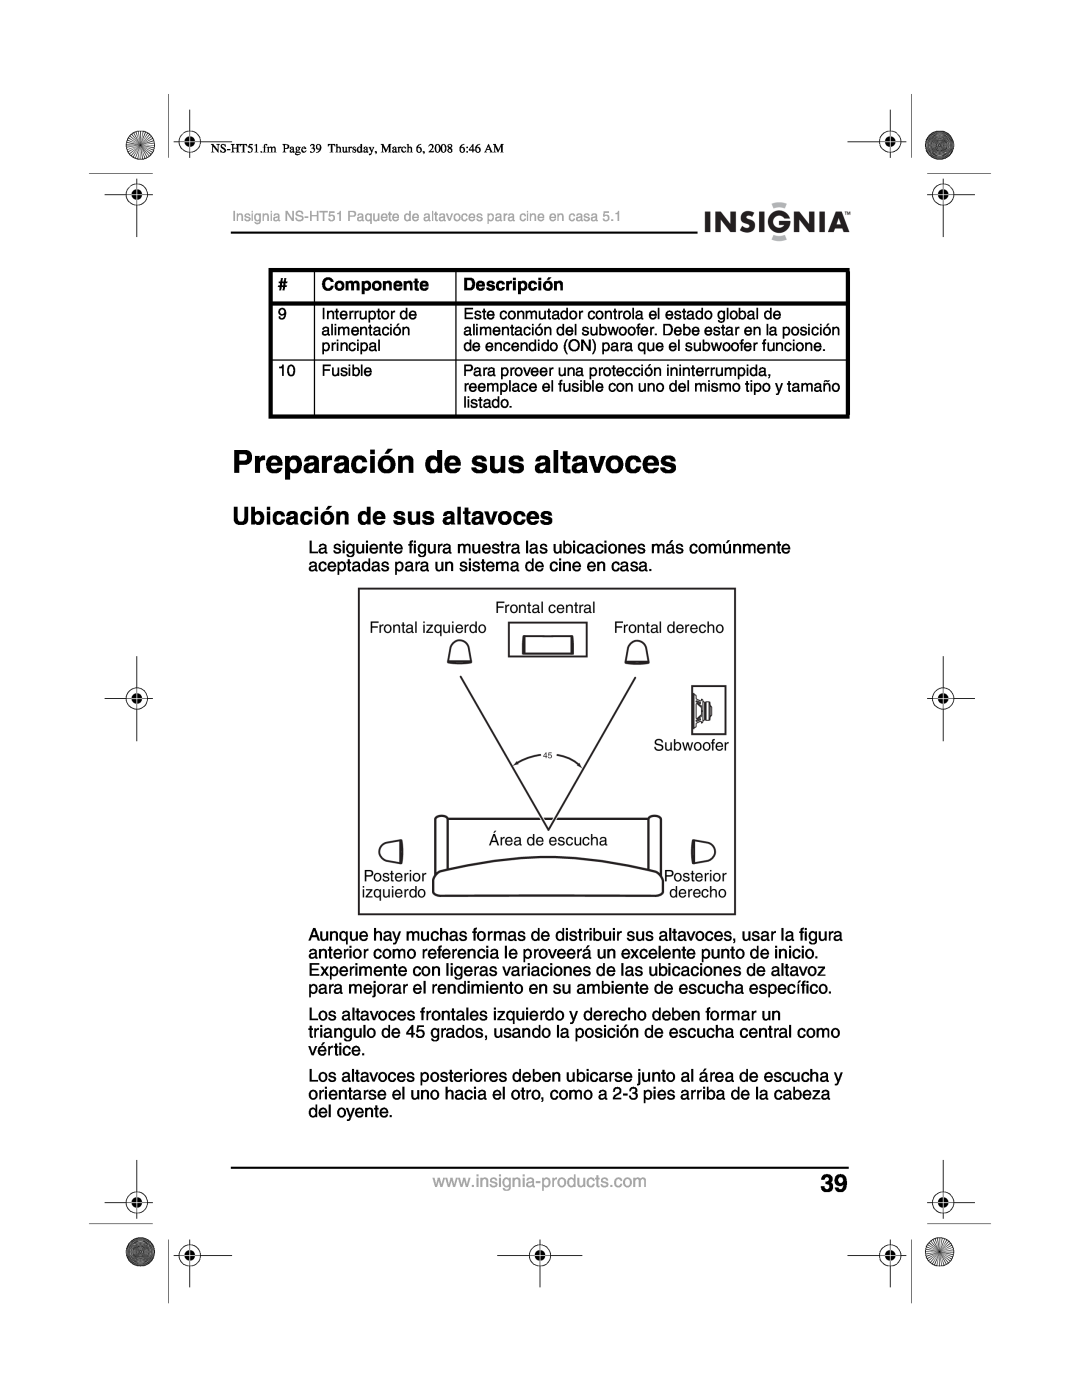 Insignia NS-HT51 manual Preparación de sus altavoces, Ubicación de sus altavoces, Componente, Descripción 